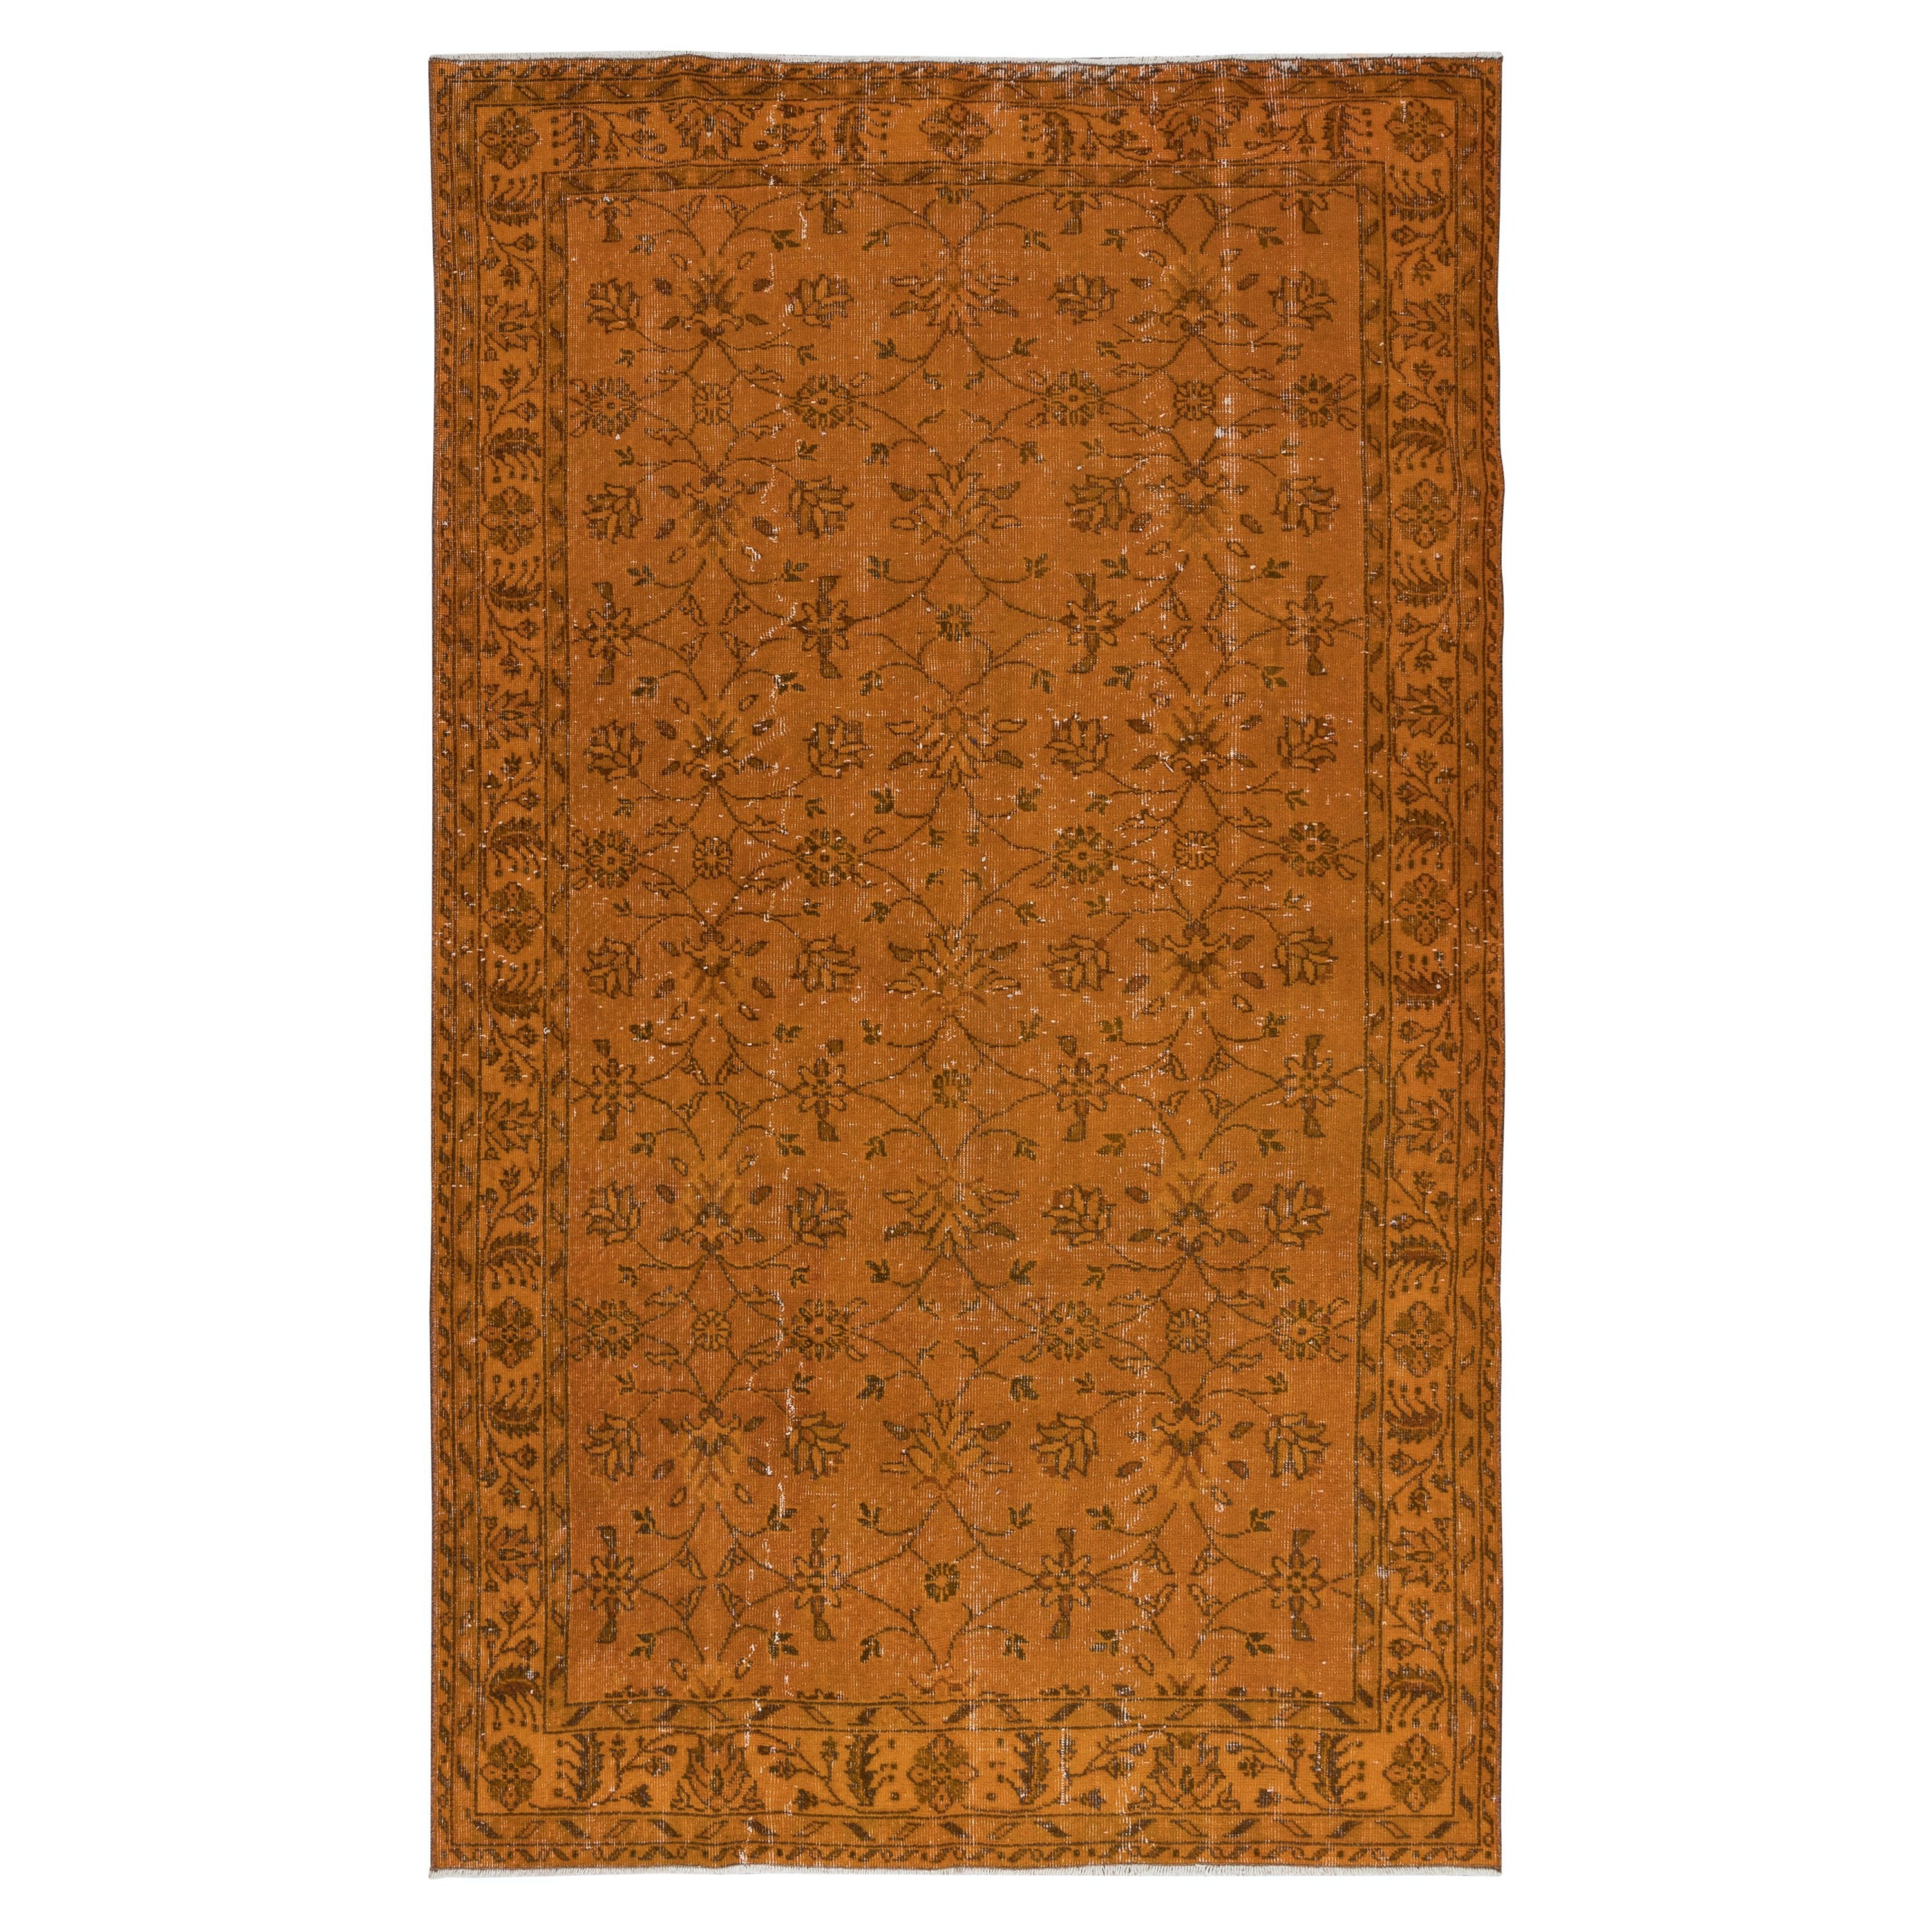 4x9.4 Ft Handmade Rug with All-Over Floral Design, Orange Turkish Carpet